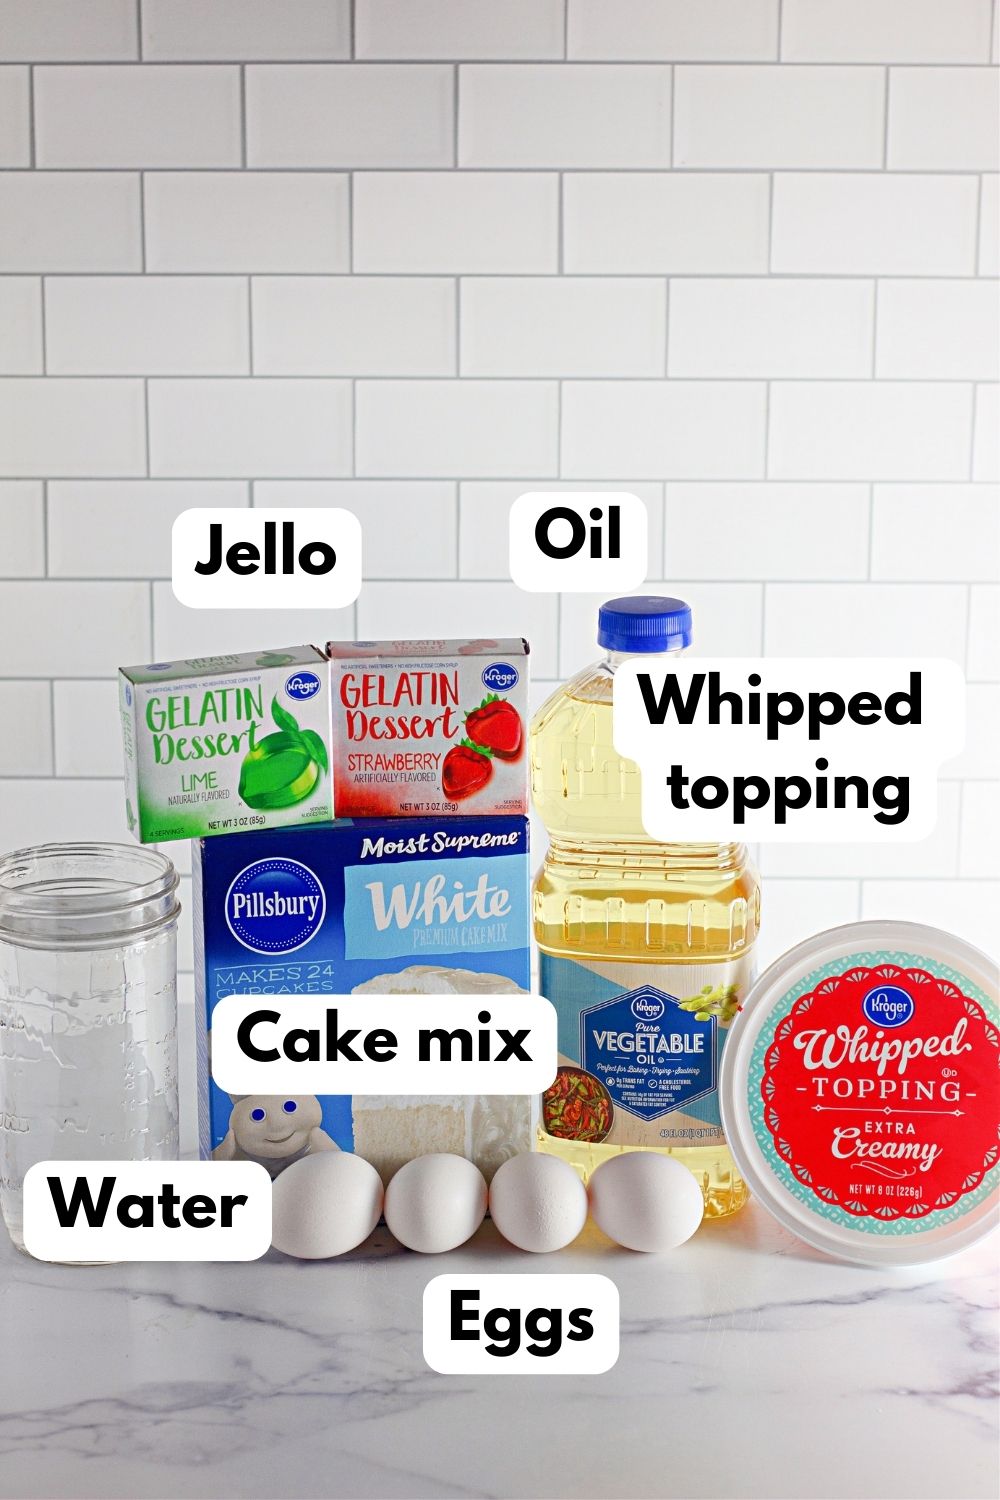 Jello cake recipe ingredients